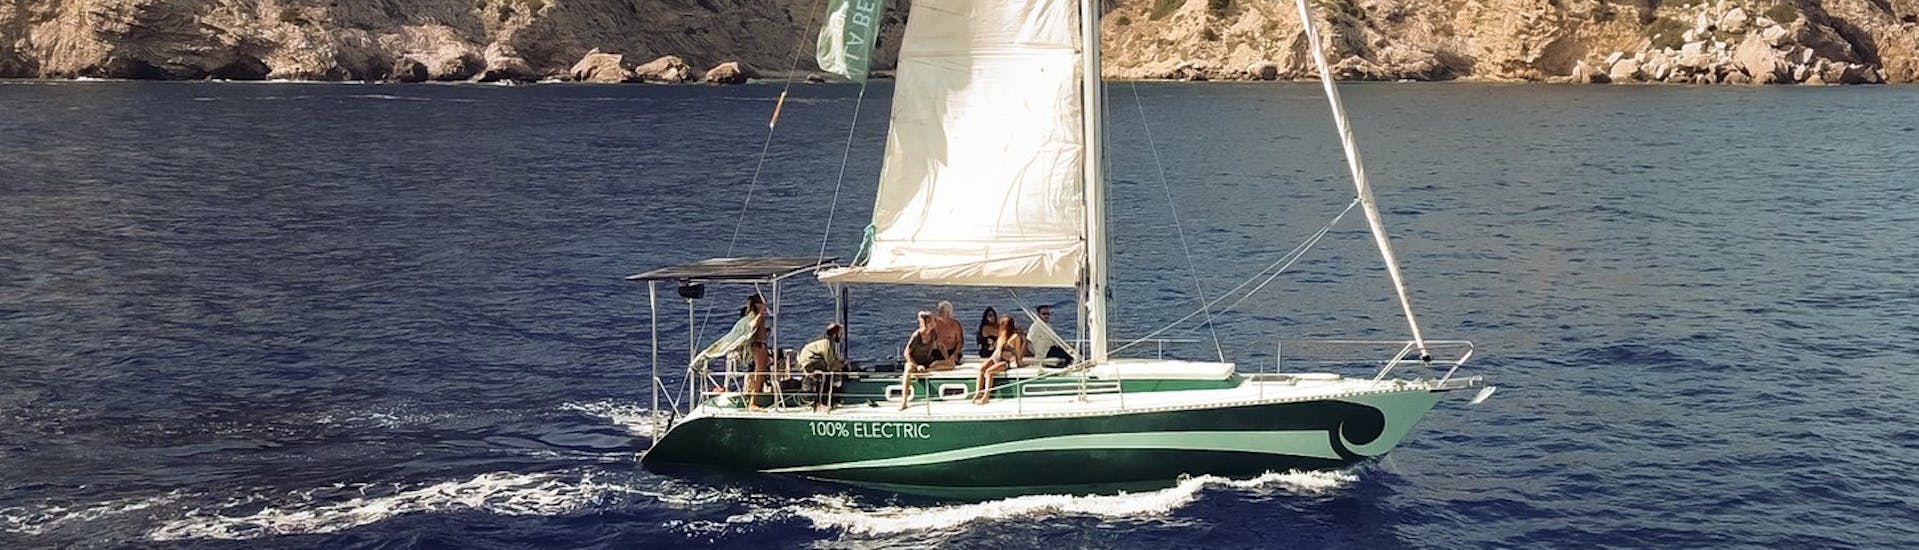 Onze monohull navigeert langs de kust tijdens de Privé zonsondergang boottocht rond Ibiza met La Bella Verde Ibiza.